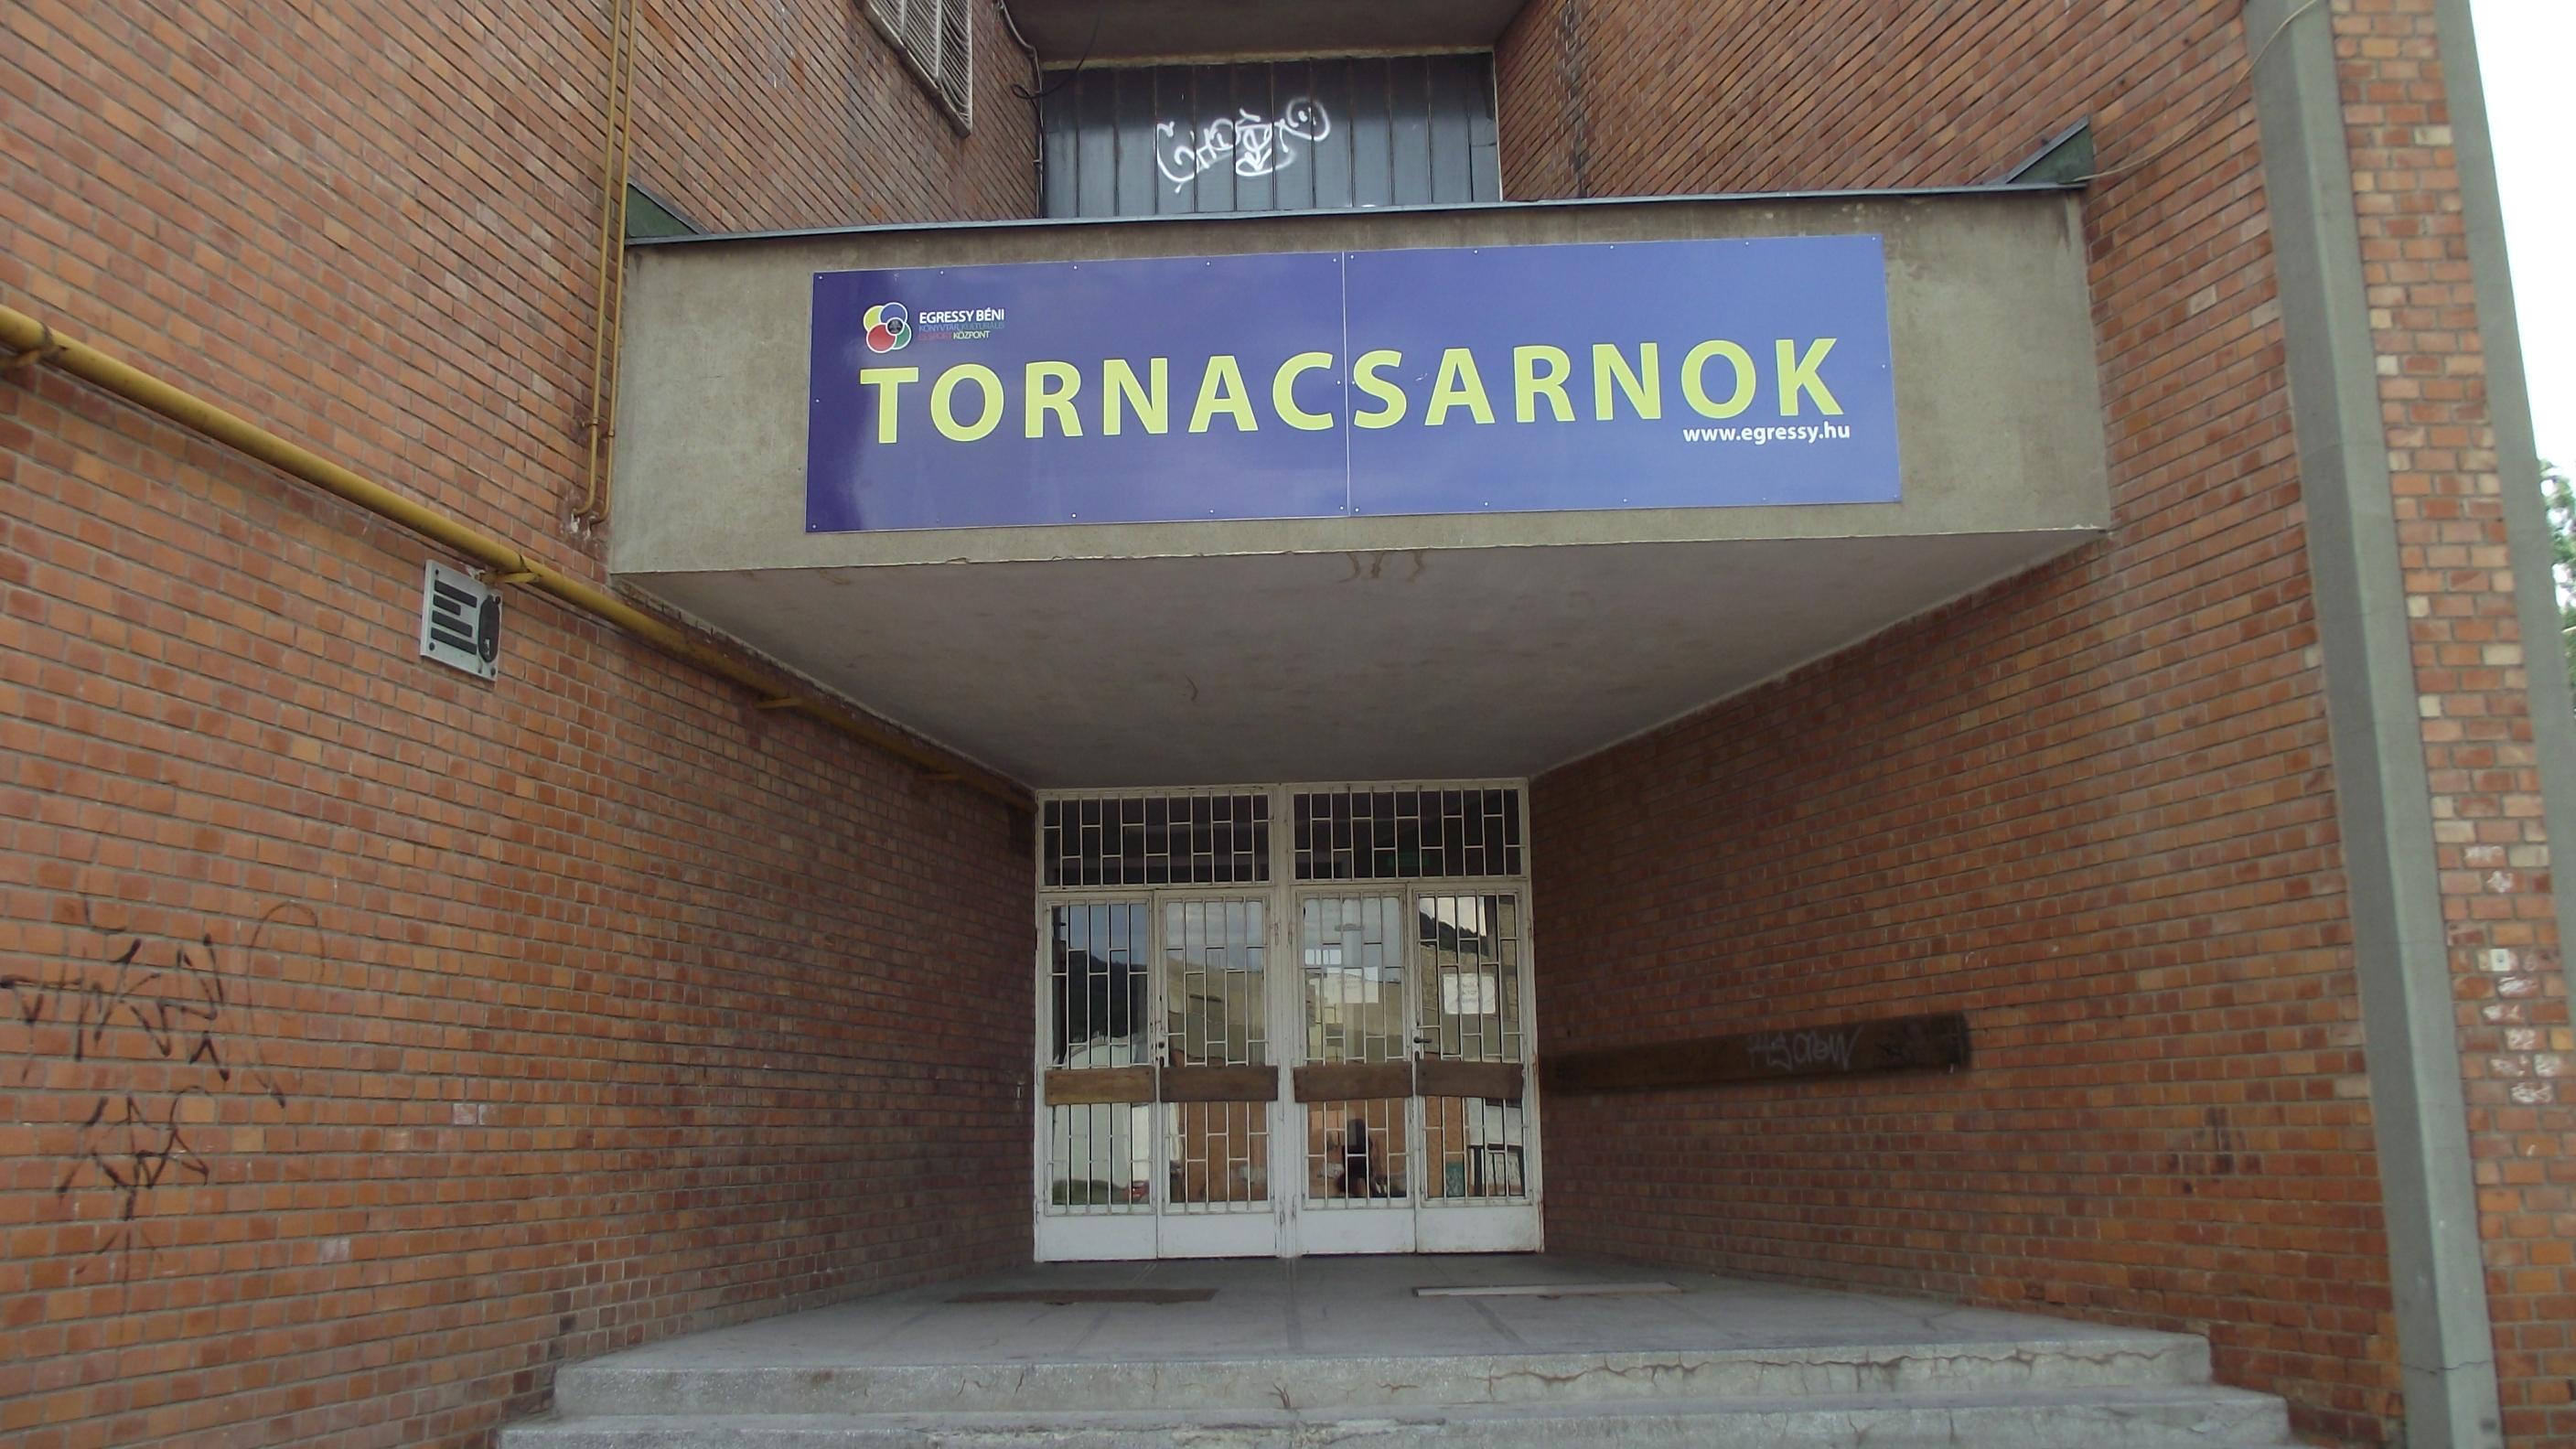  • Kazincbarcika, Tornacsarnok •  • gg630504 cc-by-nc-sa